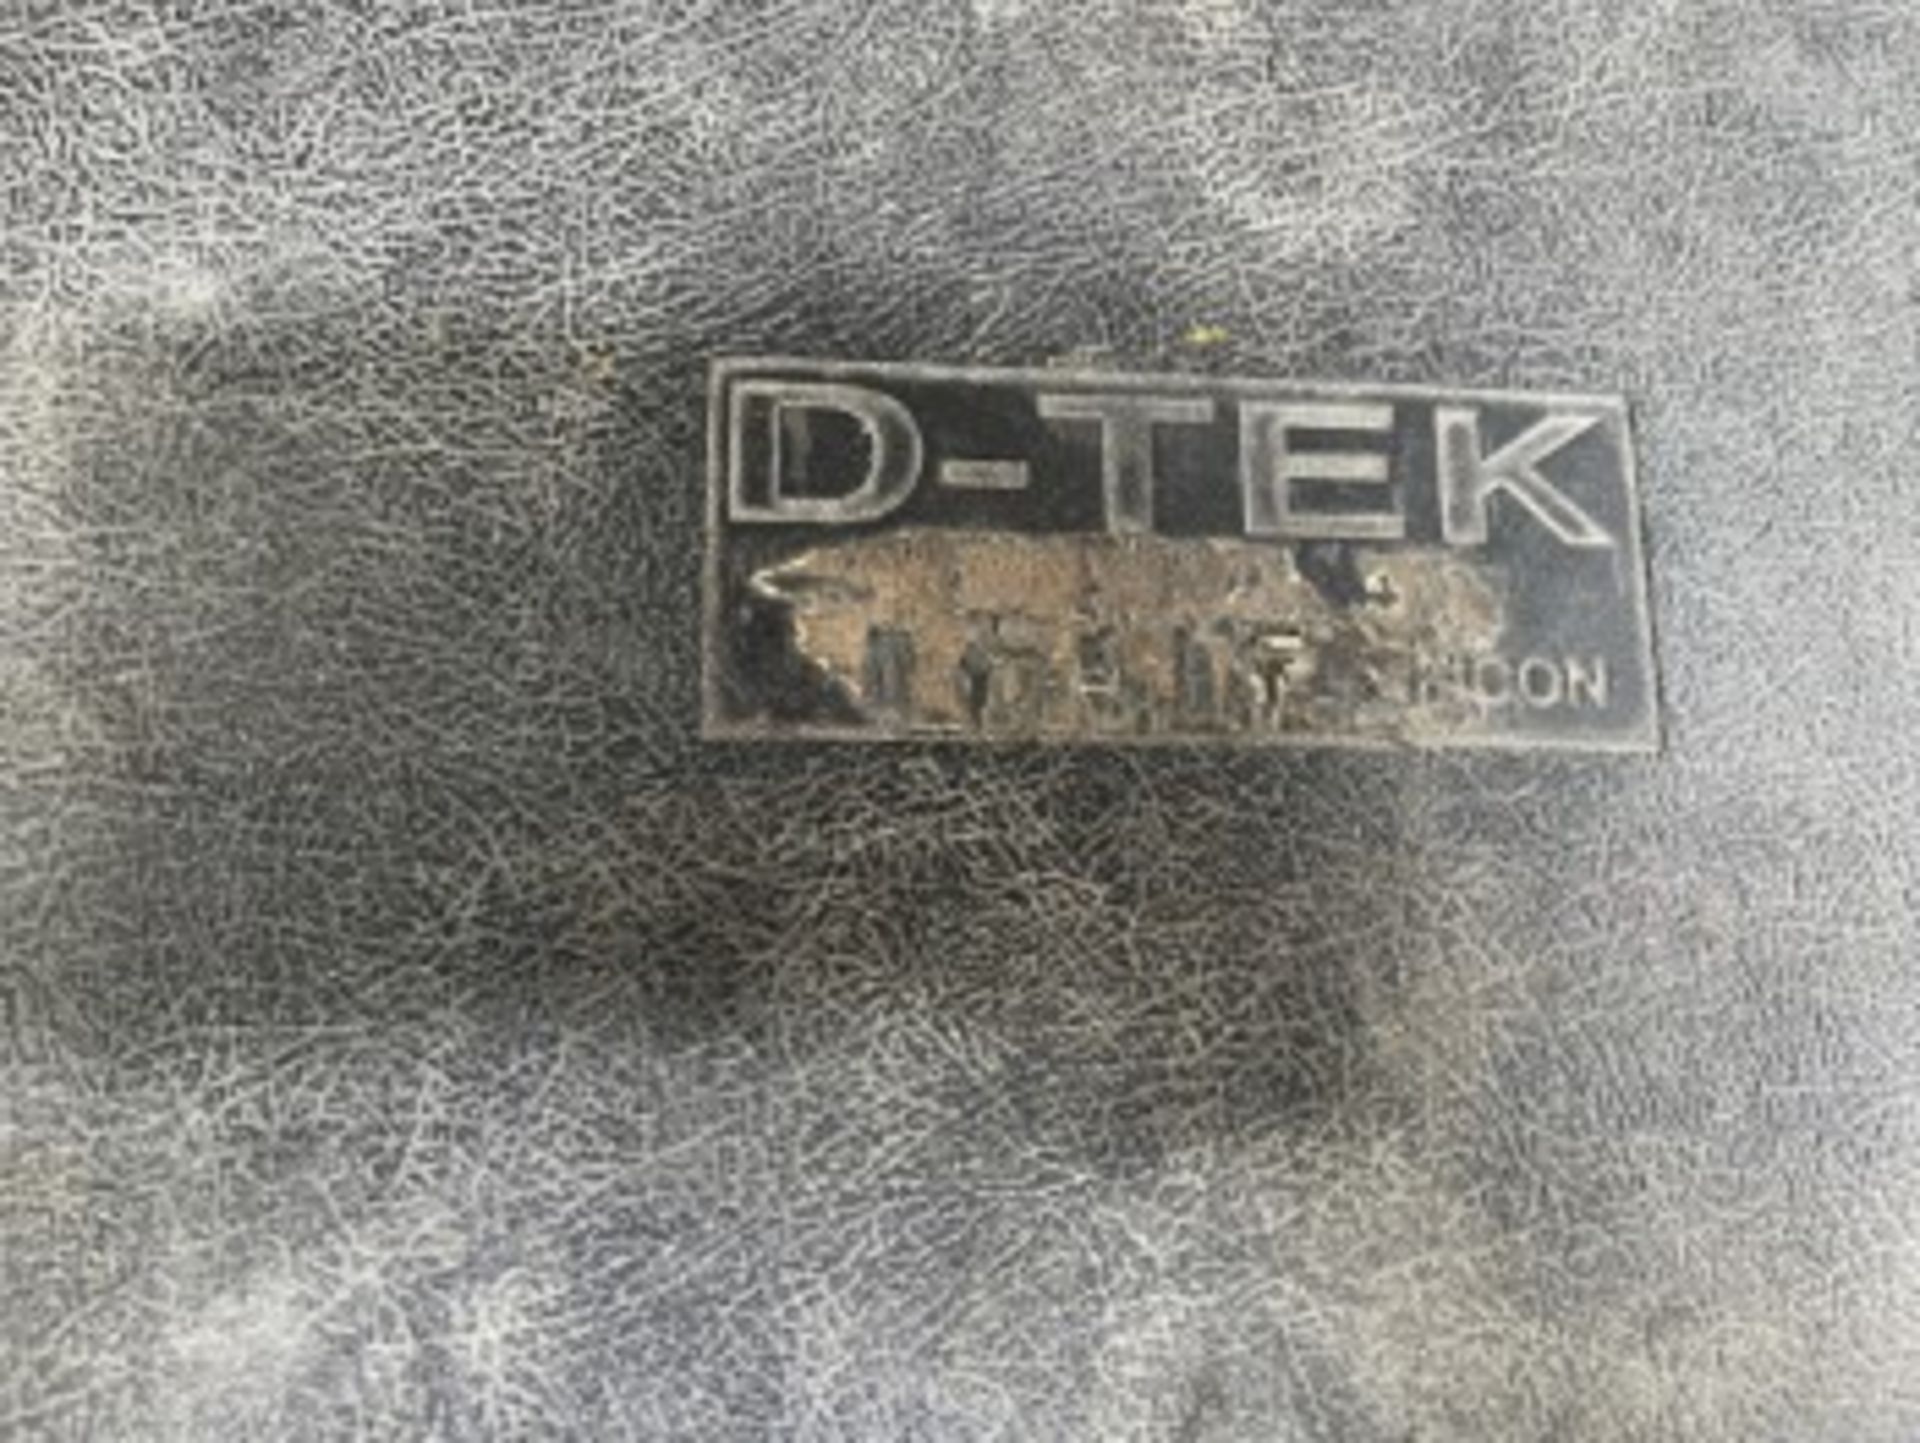 DTEK REFRIGERANT LEAK DETECTOR IN CASE - Image 2 of 3